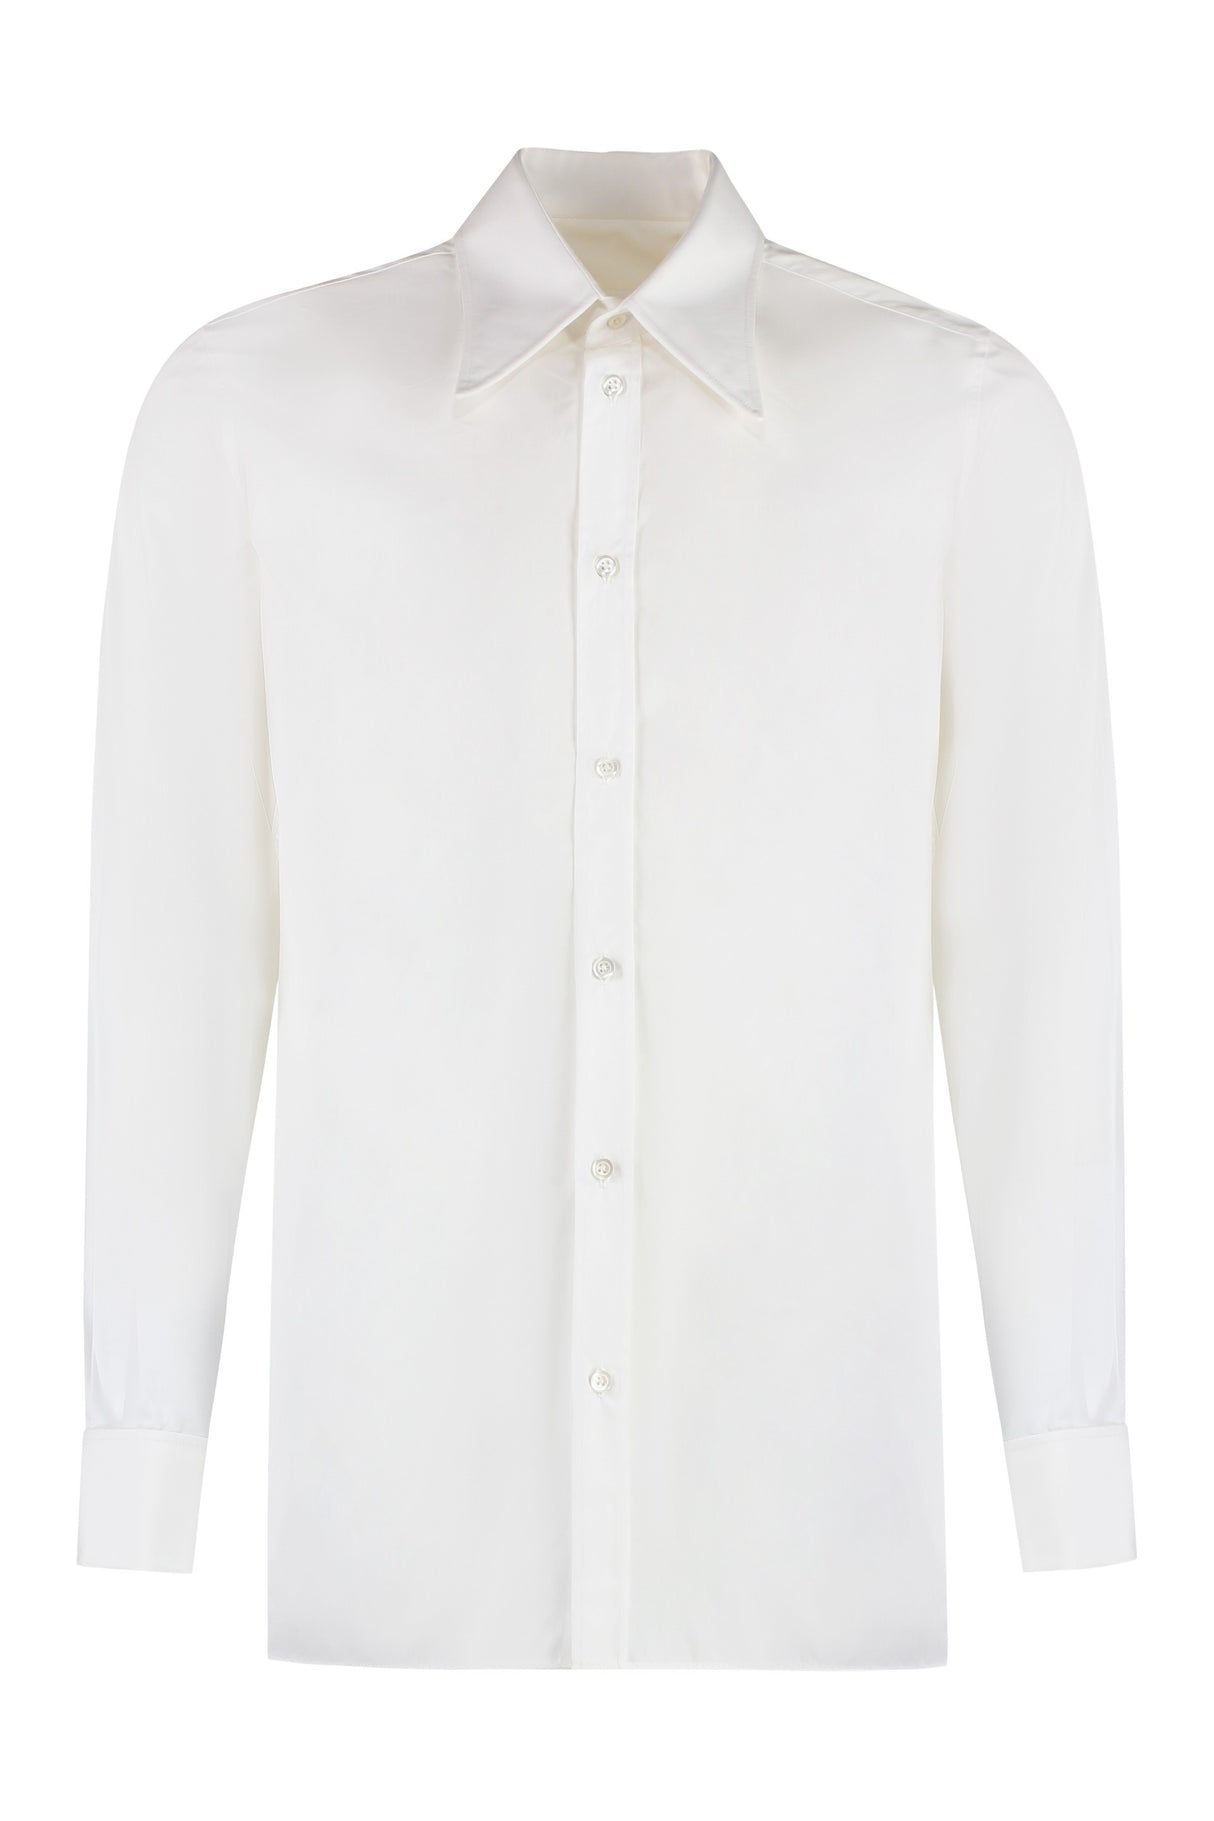 メンズ 白い綿シャツ FW23 コレクション